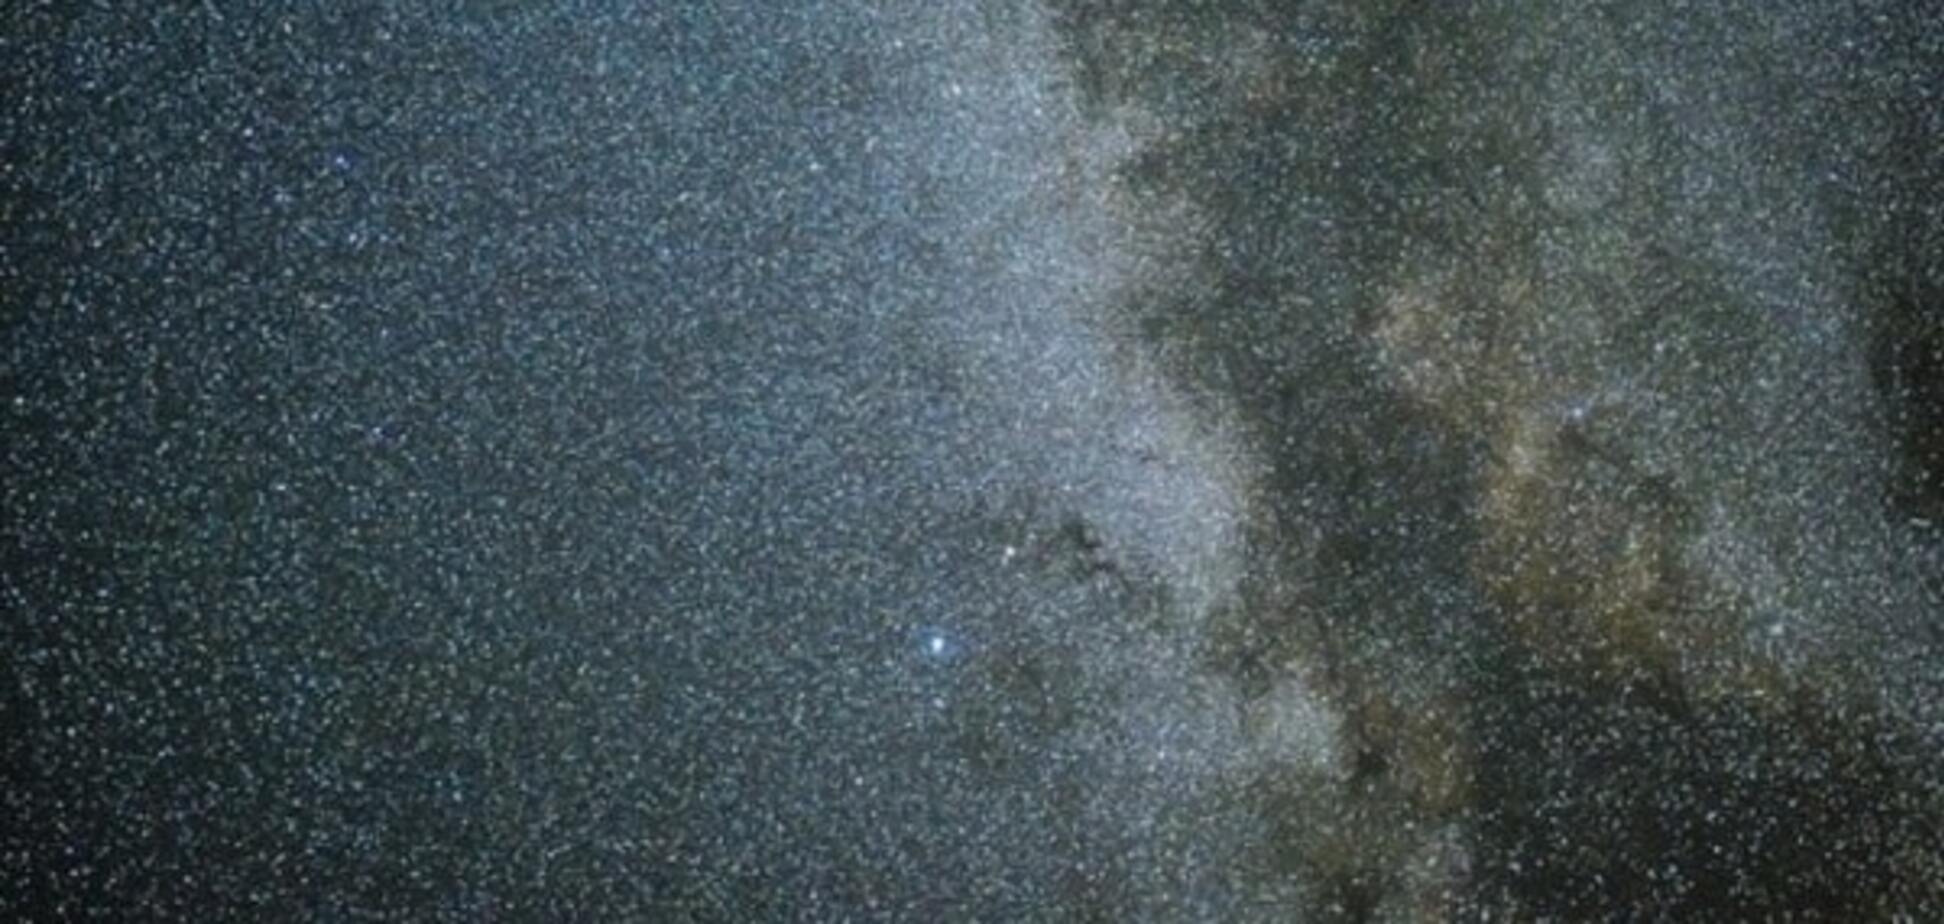 Ученые нашли сотни аномальных галактик возле Млечного Пути